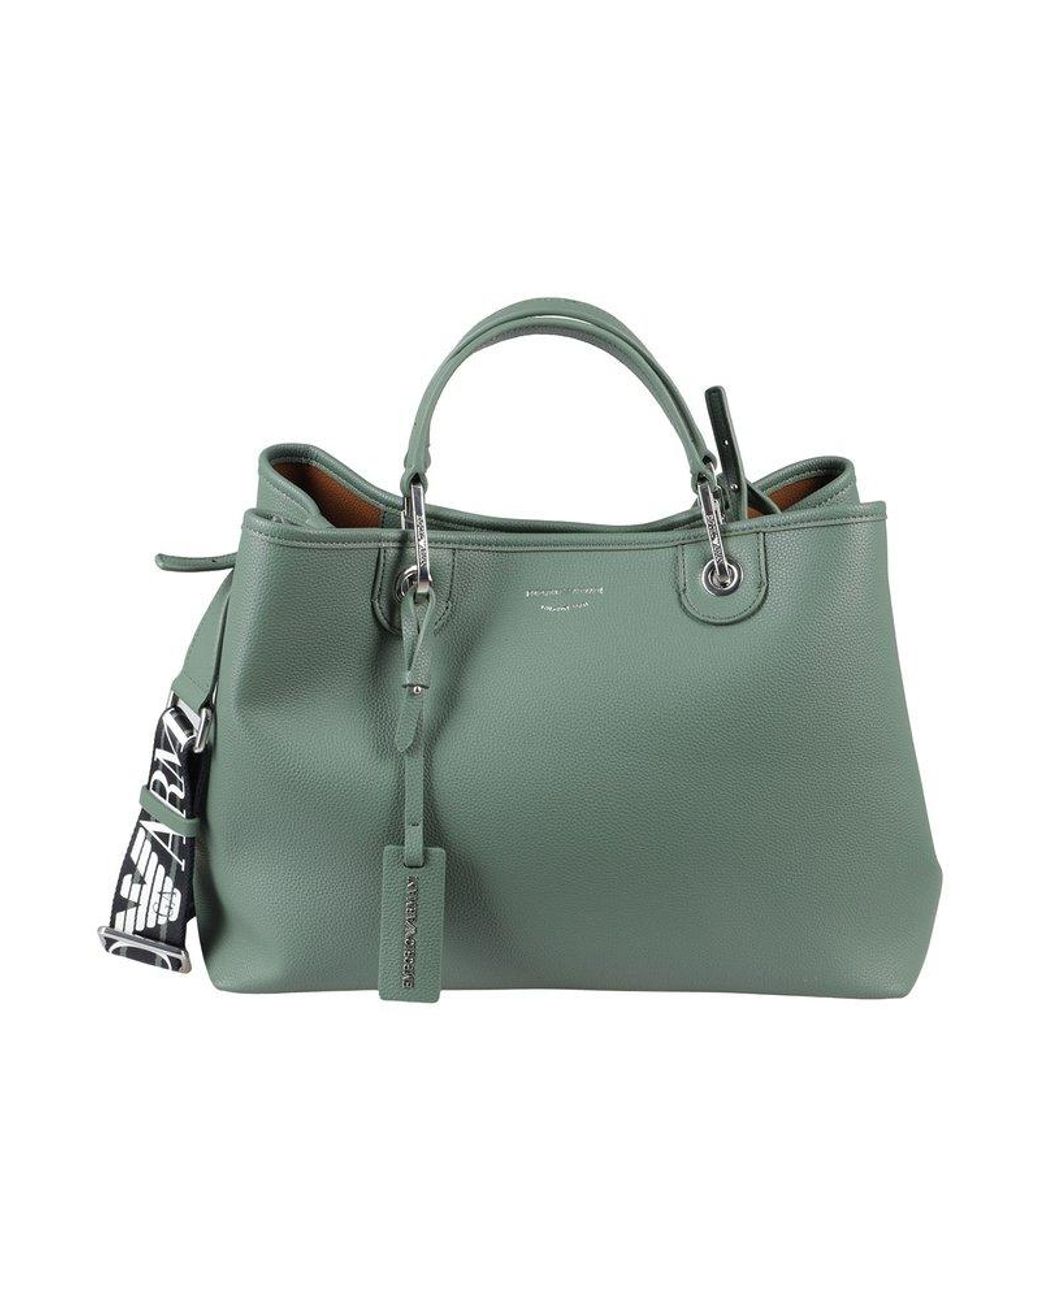 Emporio Armani Pebbled Medium Top Handle Bag in Green | Lyst